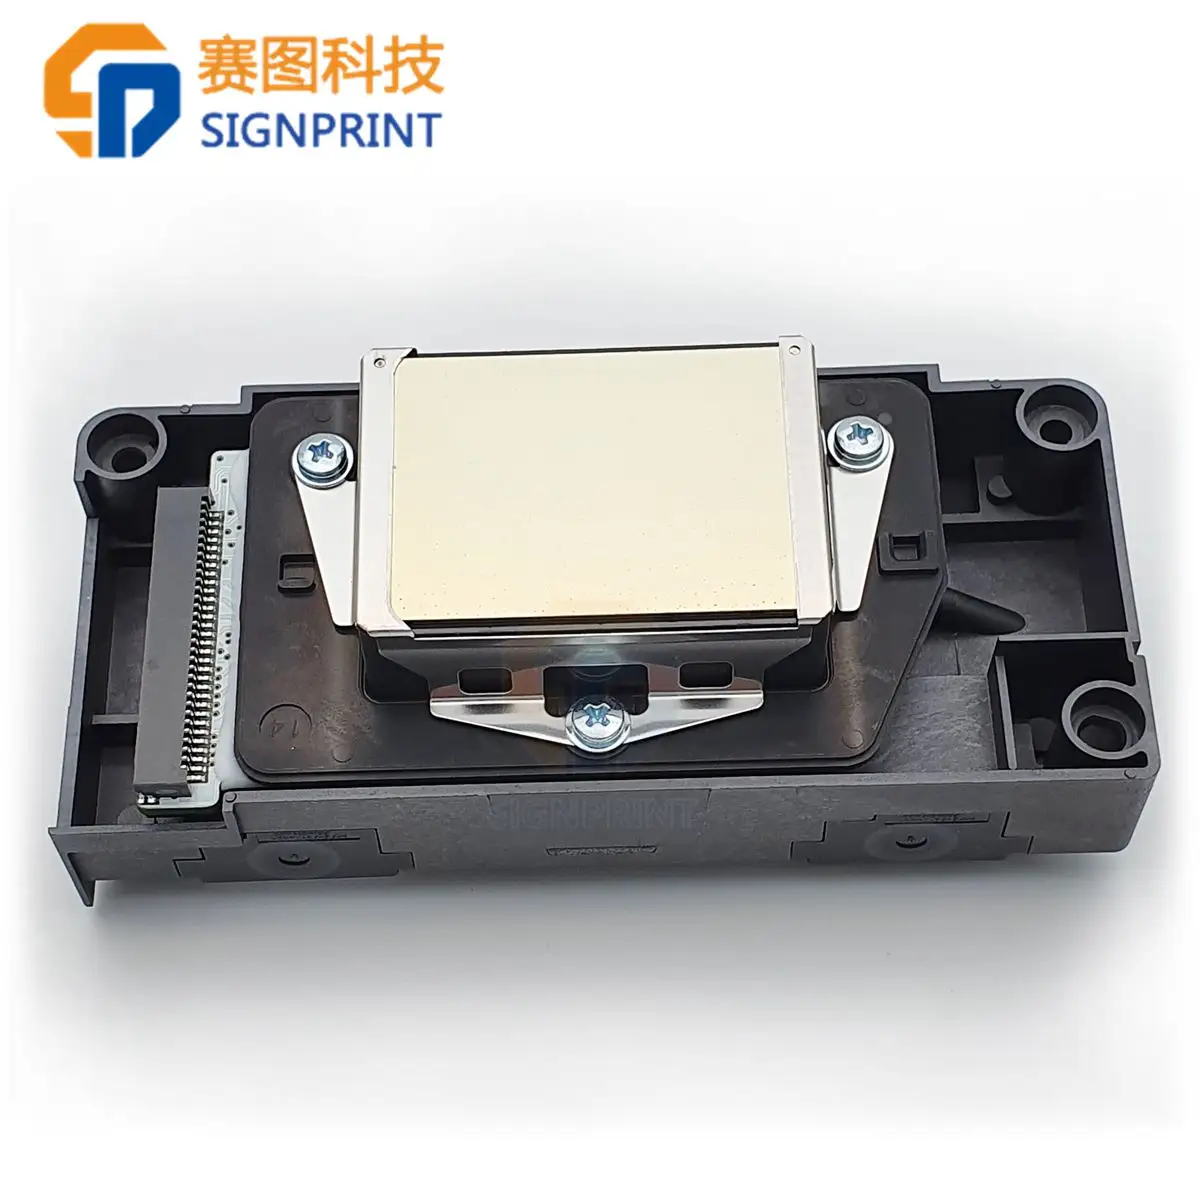 Cabezal de impresora desbloqueado Dx5 para impresora eco solvente Epson Dx5 cabezal DX5